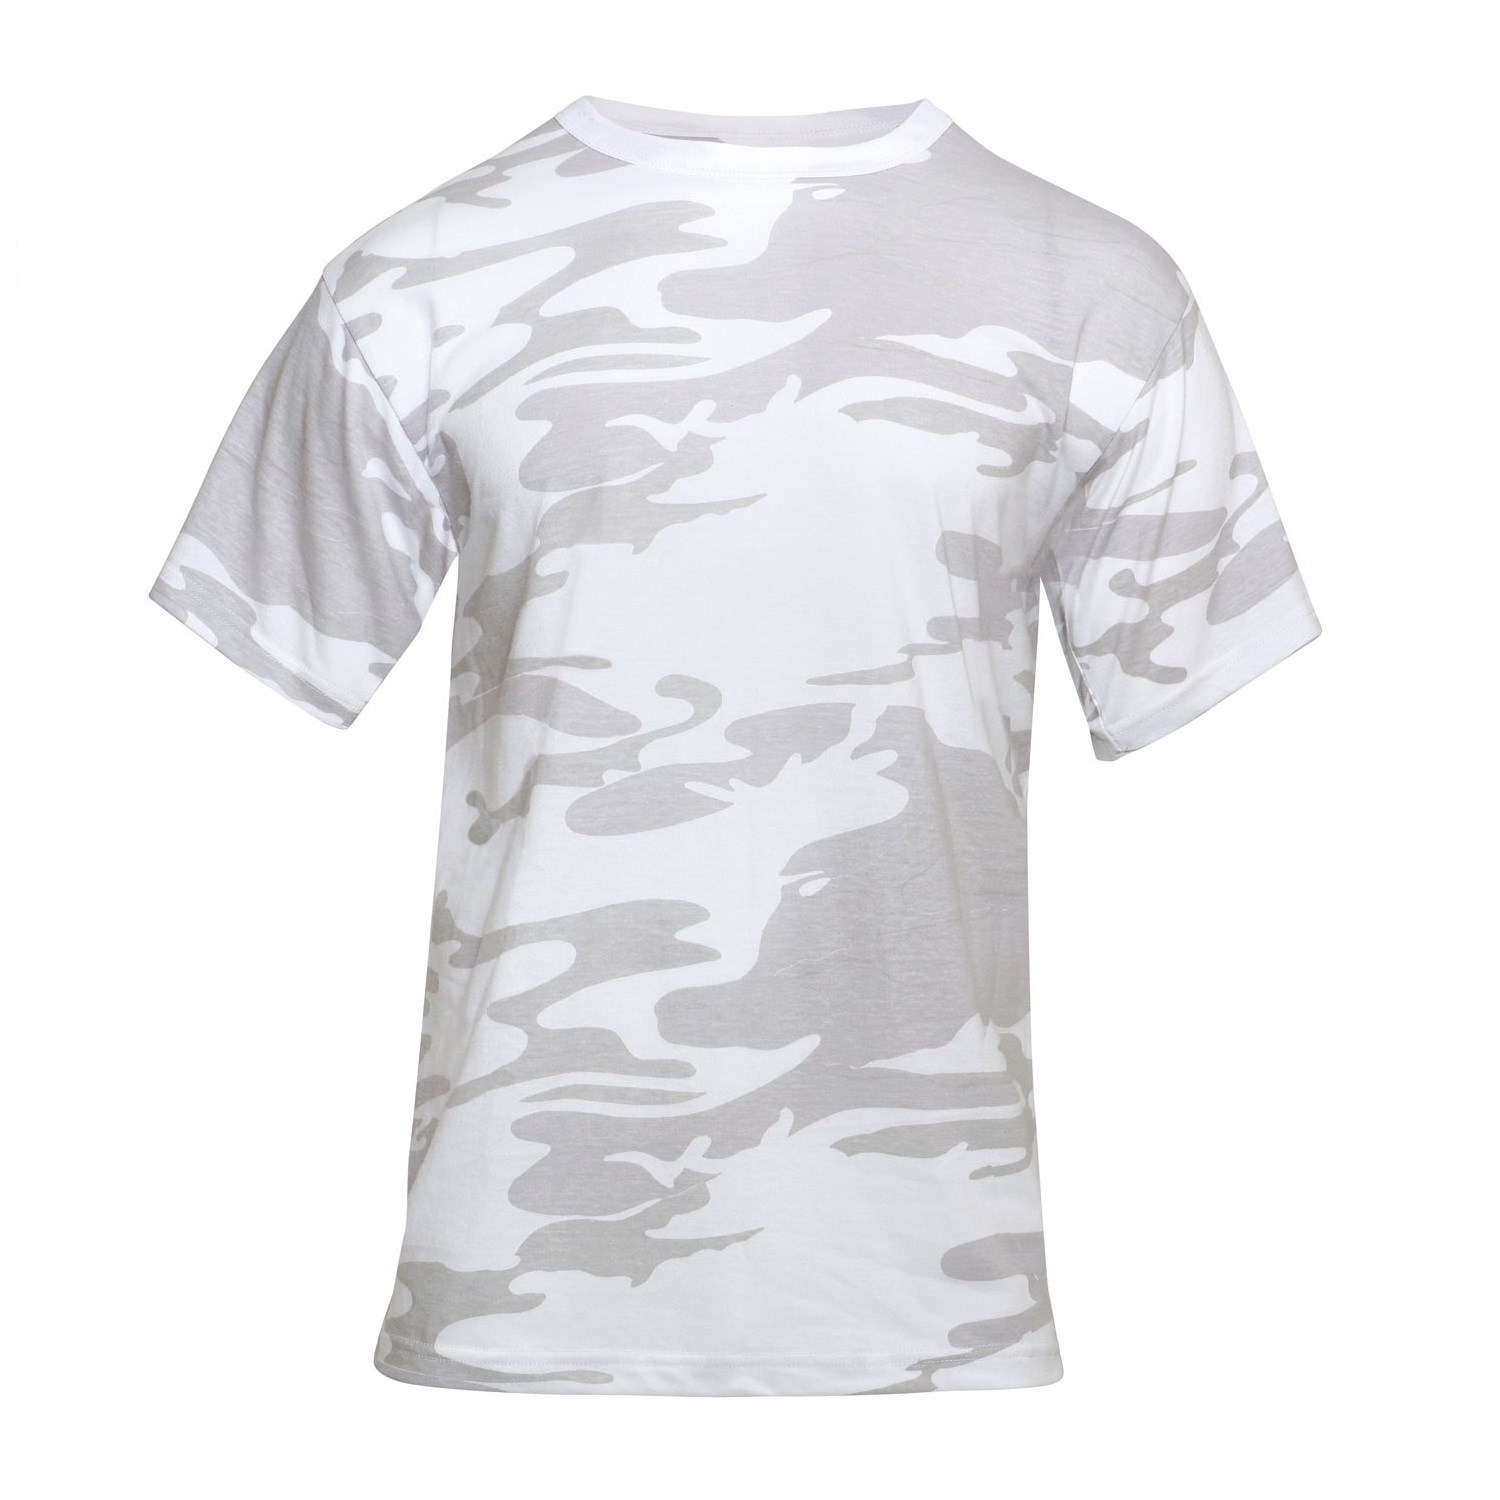 Rothco Camo T-Shirt - Woodland Camo - M